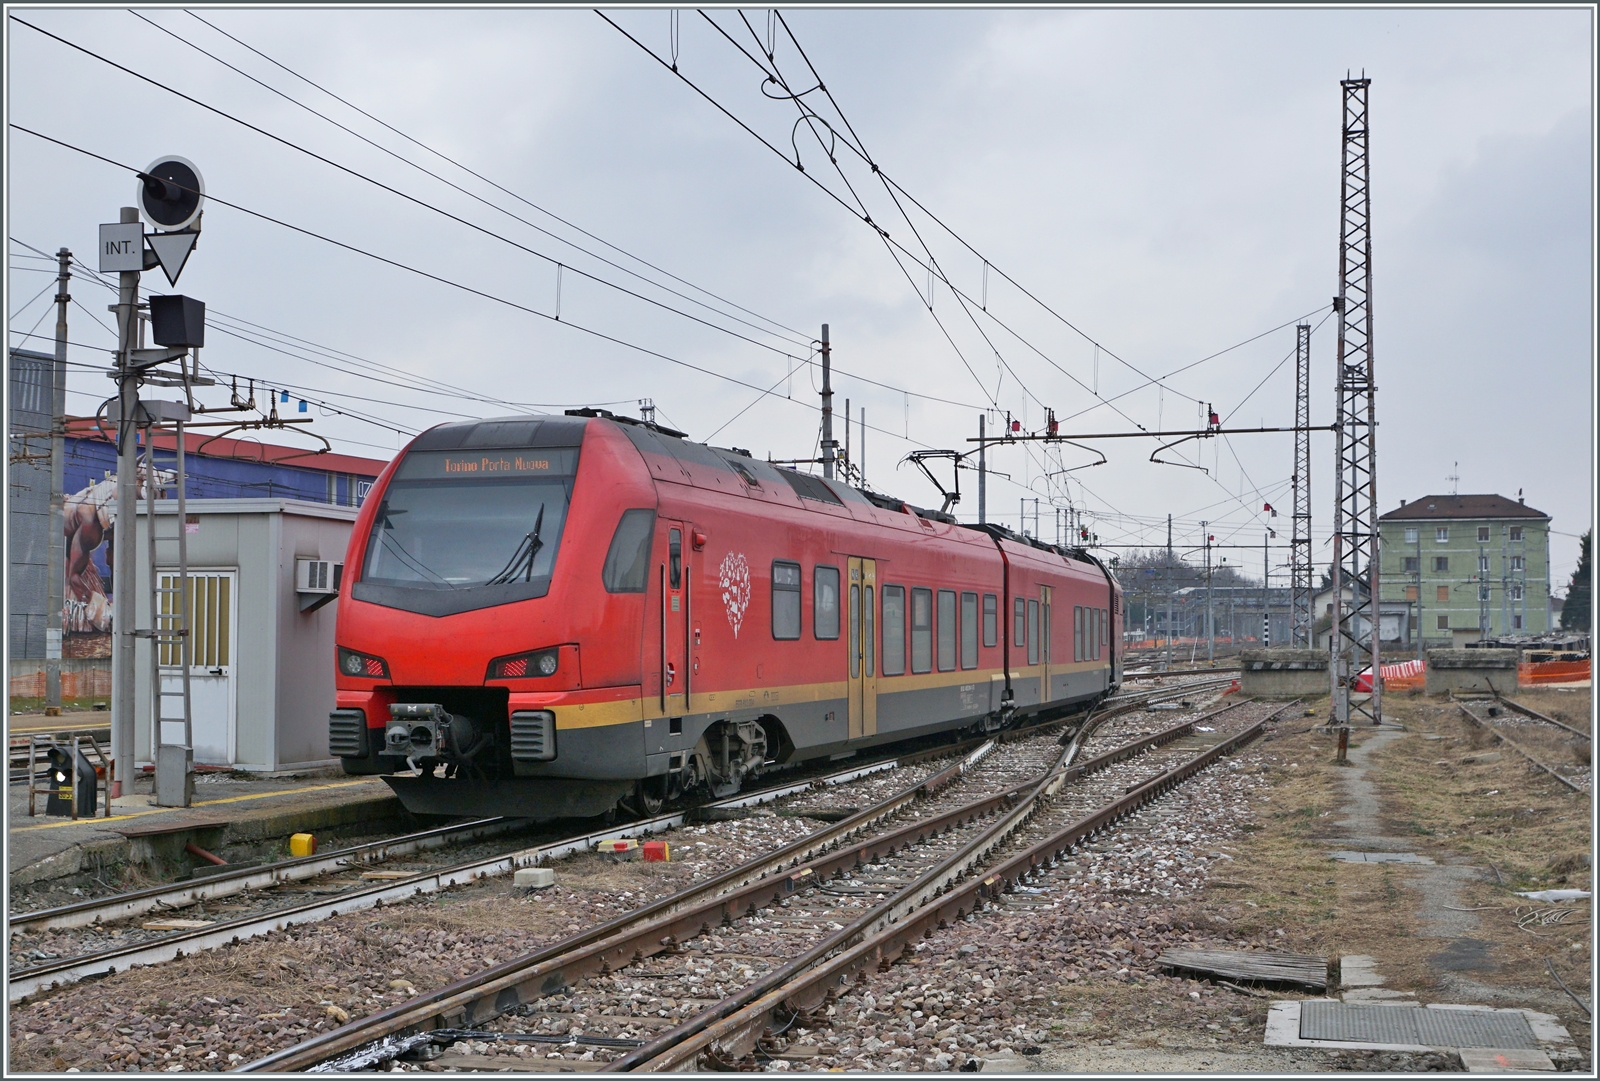 Der FS Trenitalia BTR 813 als RE VdA von Aosta nach Torino Porta Nuova unterwegs verlässt nach dem Fahrtrichungswechsel den Bahnhof von Chiavasso.

24. Feb. 2023